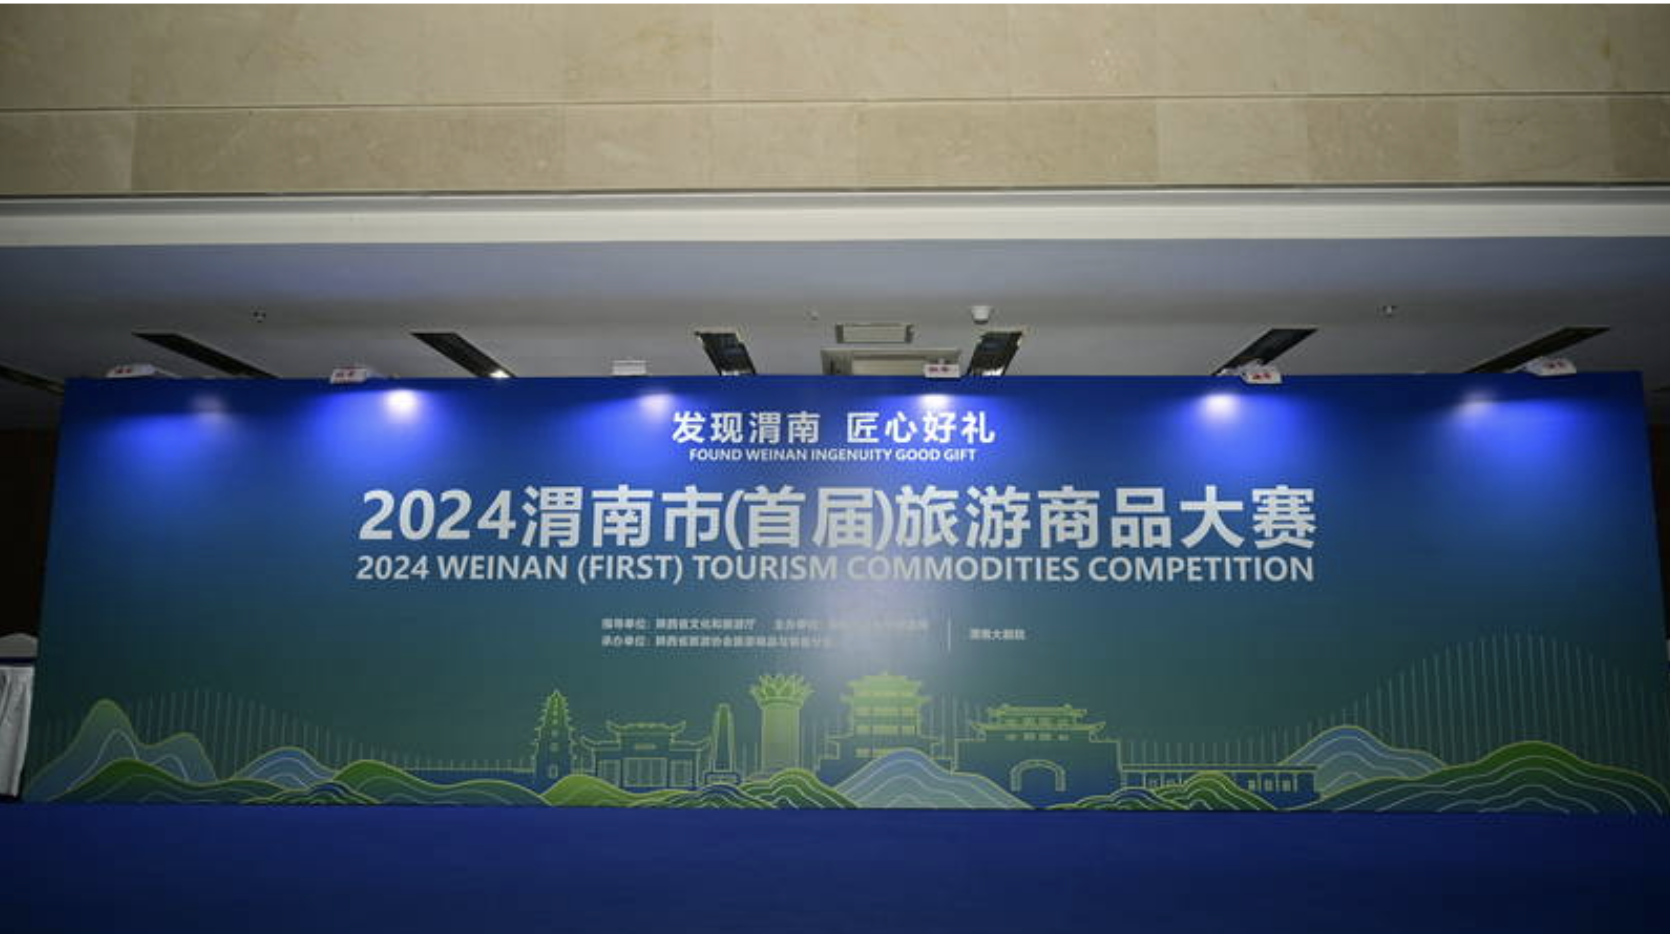 2024渭南市(首届)旅游商品大赛将举办